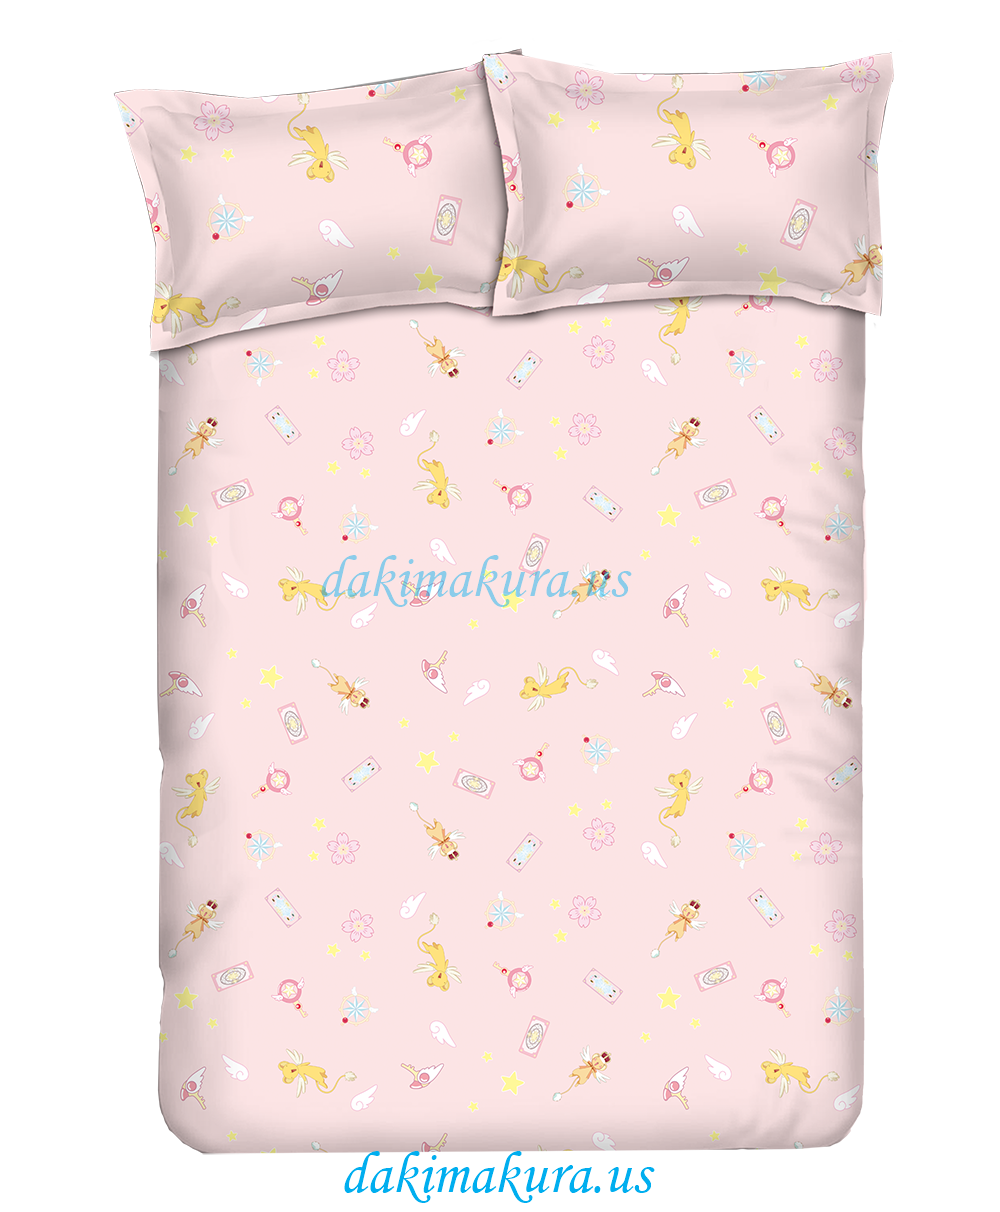 дешевый Cardcaptor Sakura набор постельных принадлежностей для аниме фильмов одеяло для кроватей и пододеяльник простыня с подушками из фарфорового завода